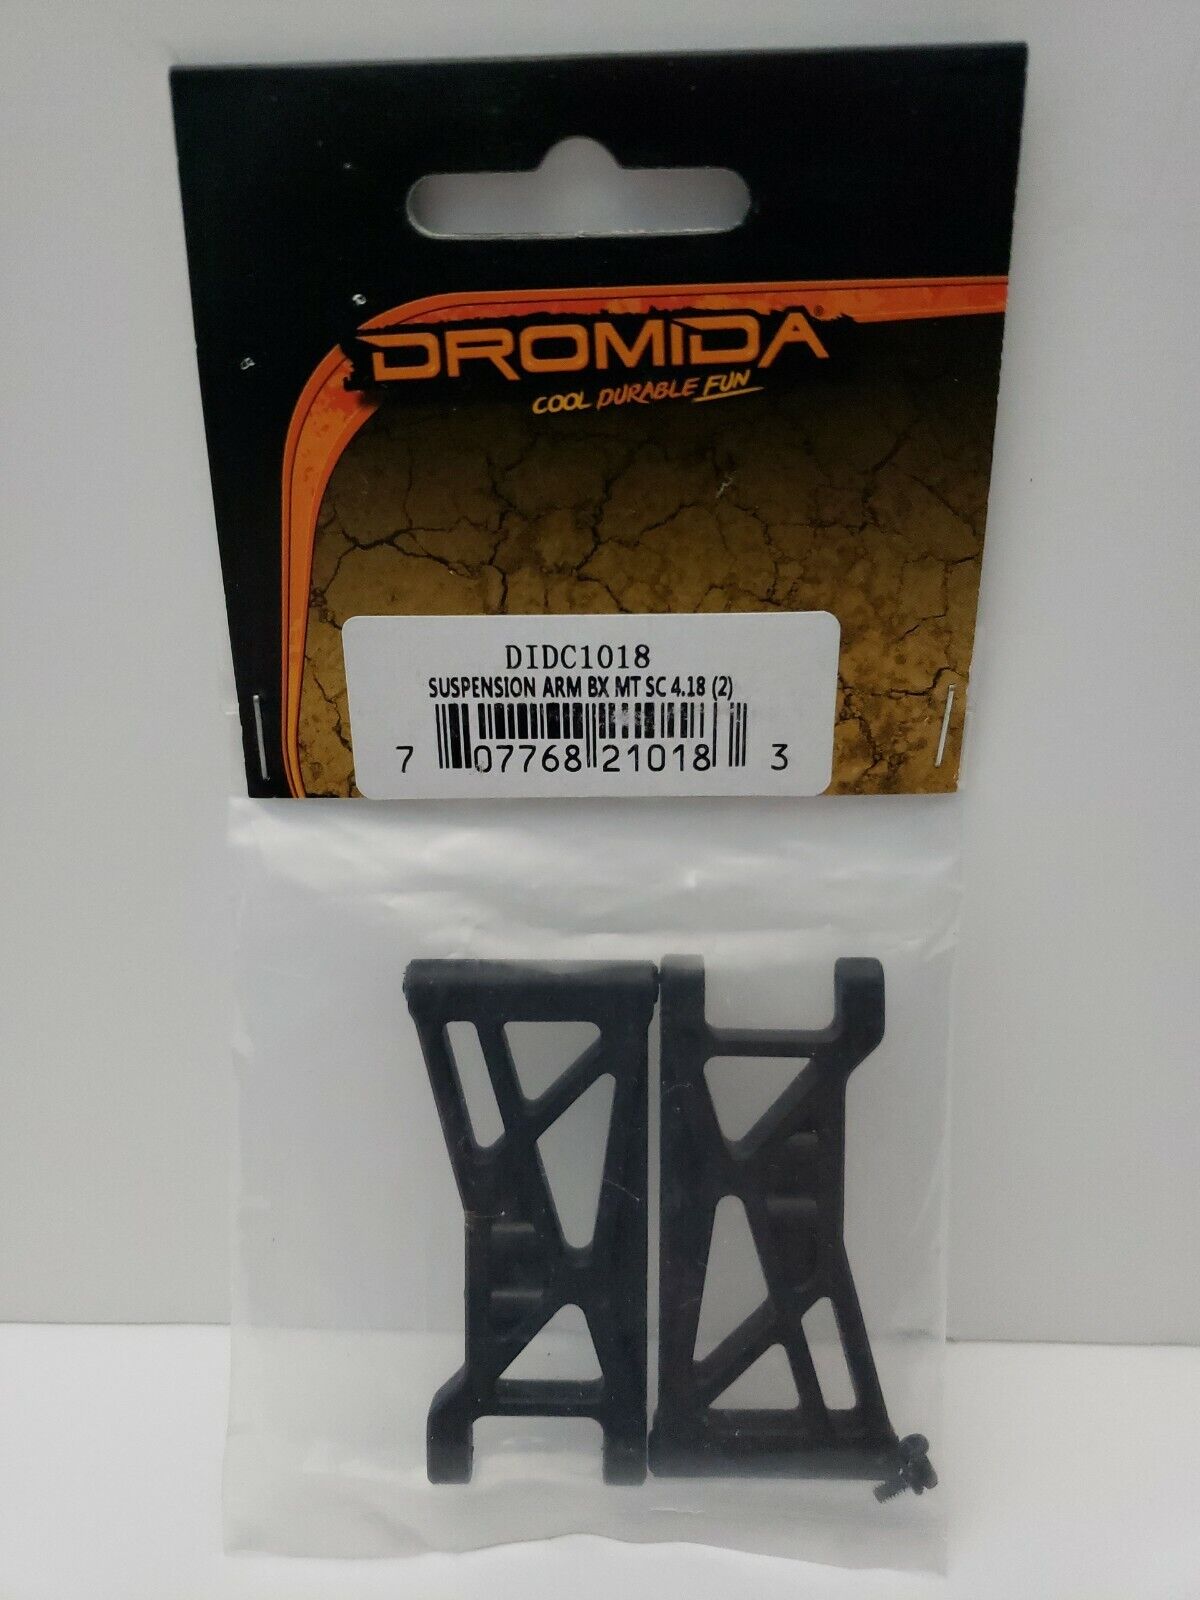 New Dromida DIDC1018 Suspension Arm DB,BX,MT,SC,DT 4.18 (2)